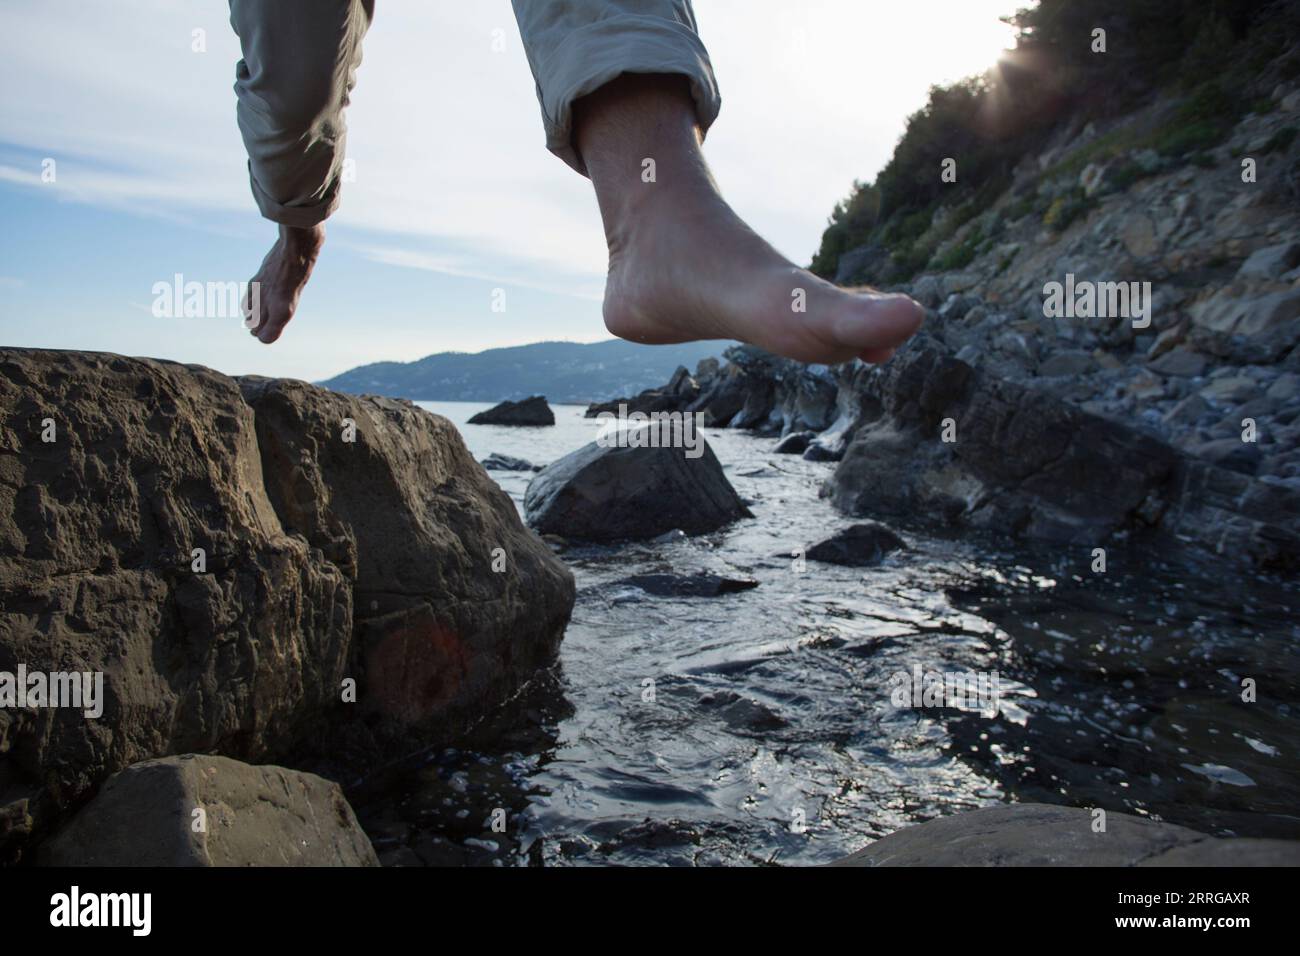 Angolo basso dei piedi dell'uomo che saltano tra le rocce sopra il torrente Foto Stock